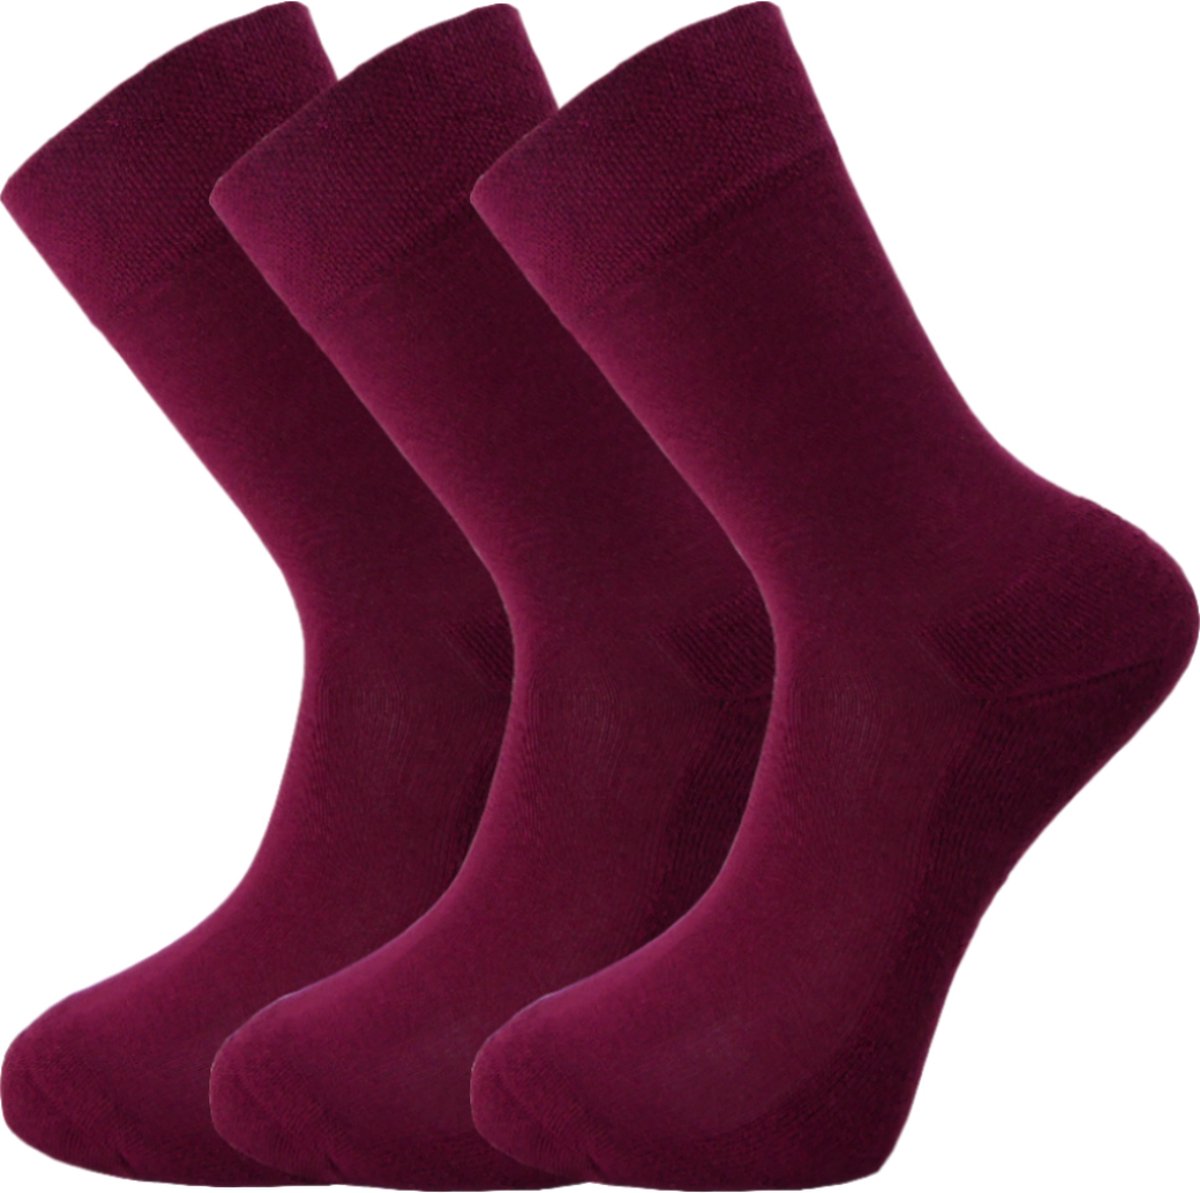 Bamboe sokken - Unisex - 3 paar - Bordeaux Rood - maat 35-37 - Extra dikke zool – Zacht en antibacterieel